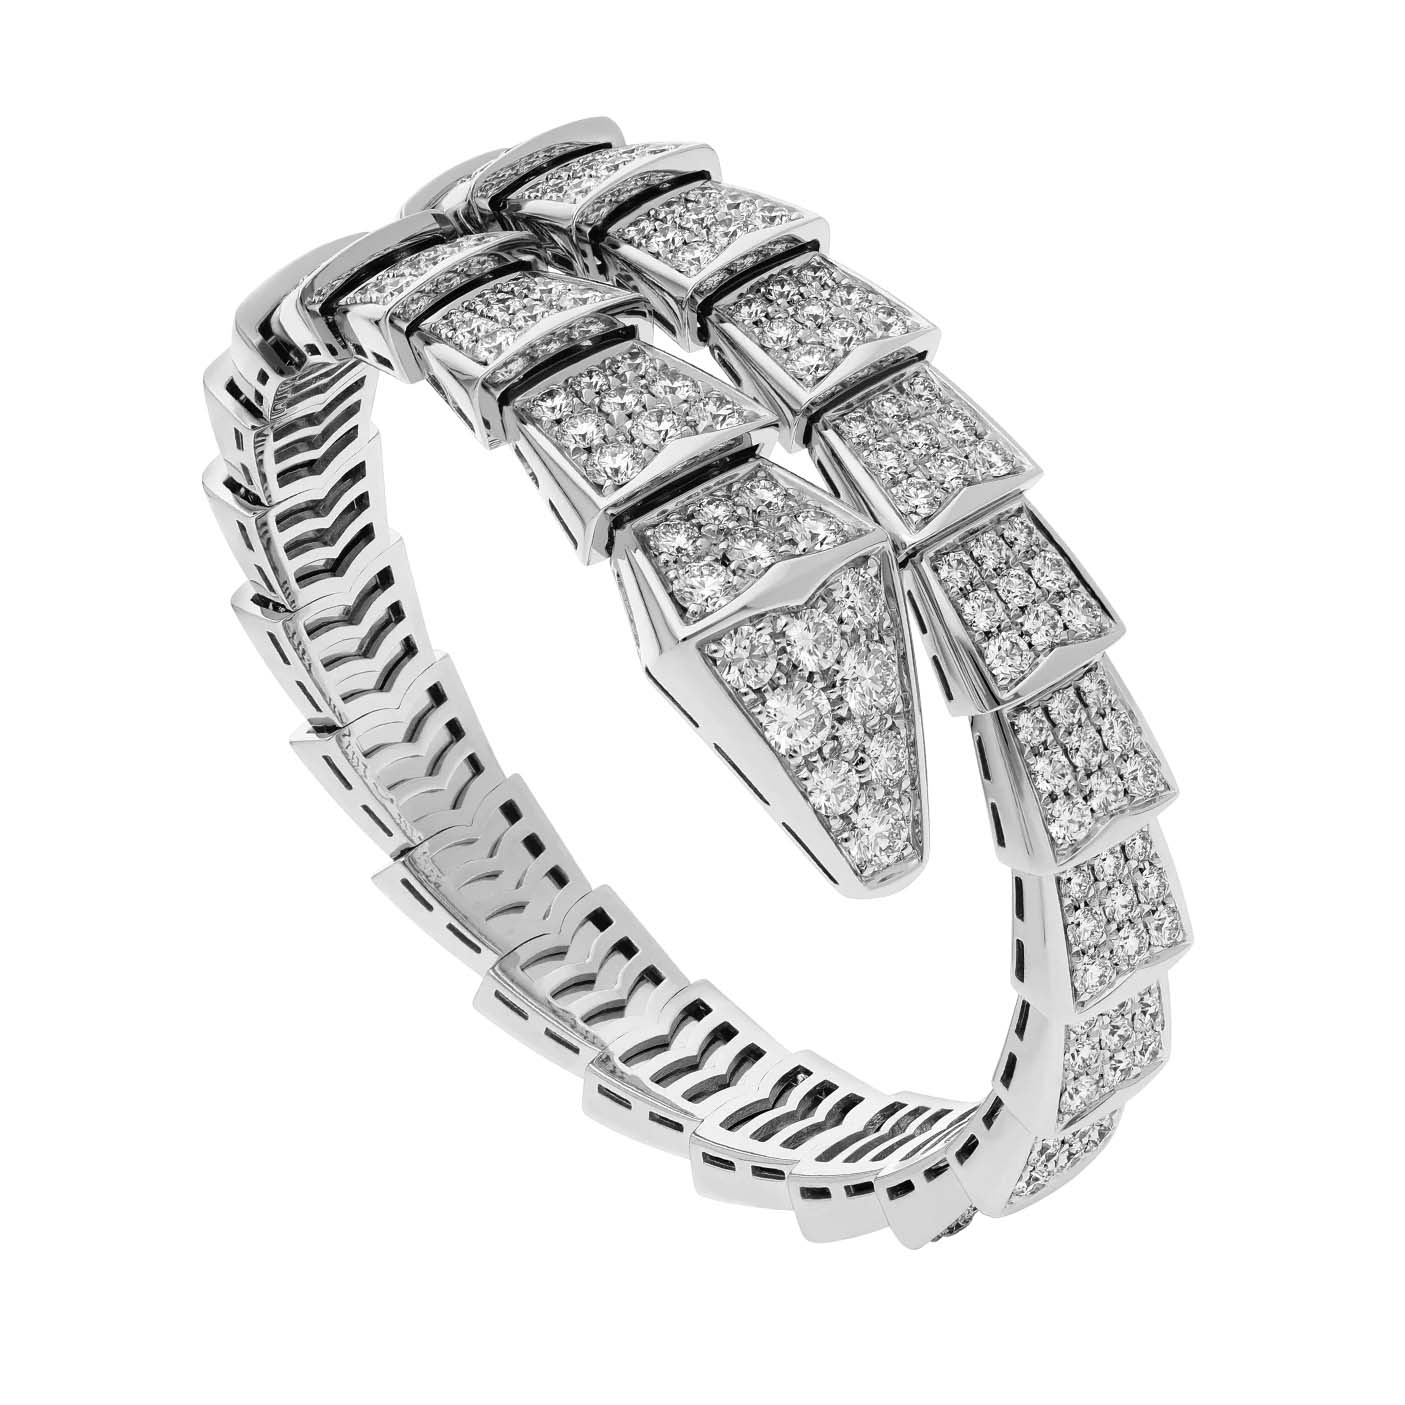 Gioielli OEM/ODM all'ingrosso Bracciale a spirale dal design personalizzato in oro bianco 18 kt, con pavé di diamanti Servizio di gioielleria OEM